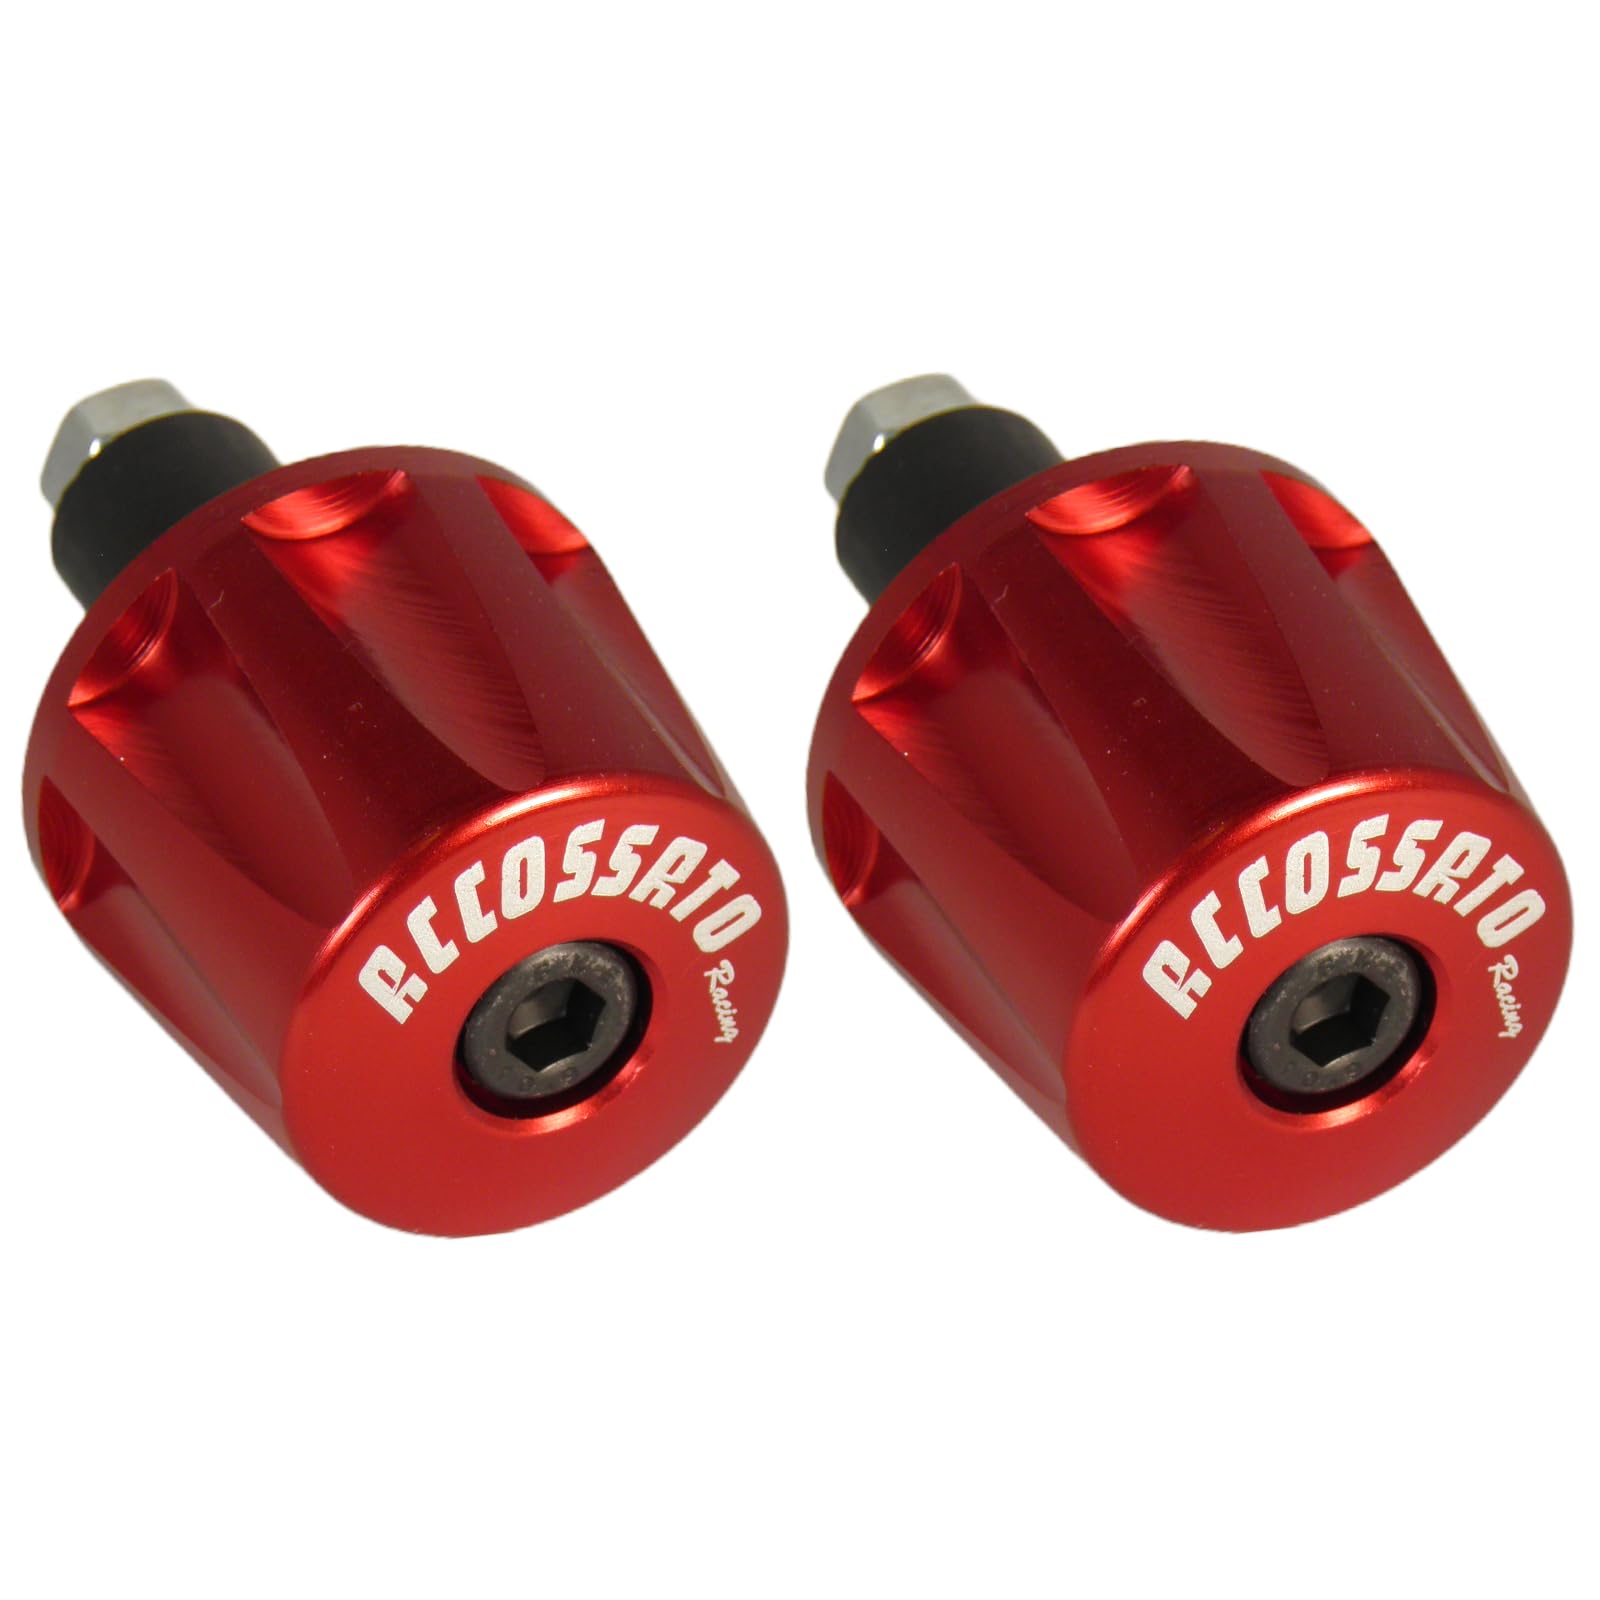 Paar rote Accossato Gegengewichte für Lenker mit Innenloch von 12 mm bis 20 mm für Yamaha MTM 690 von 2018 bis 2019 (CC 700) von ACCOSSATO